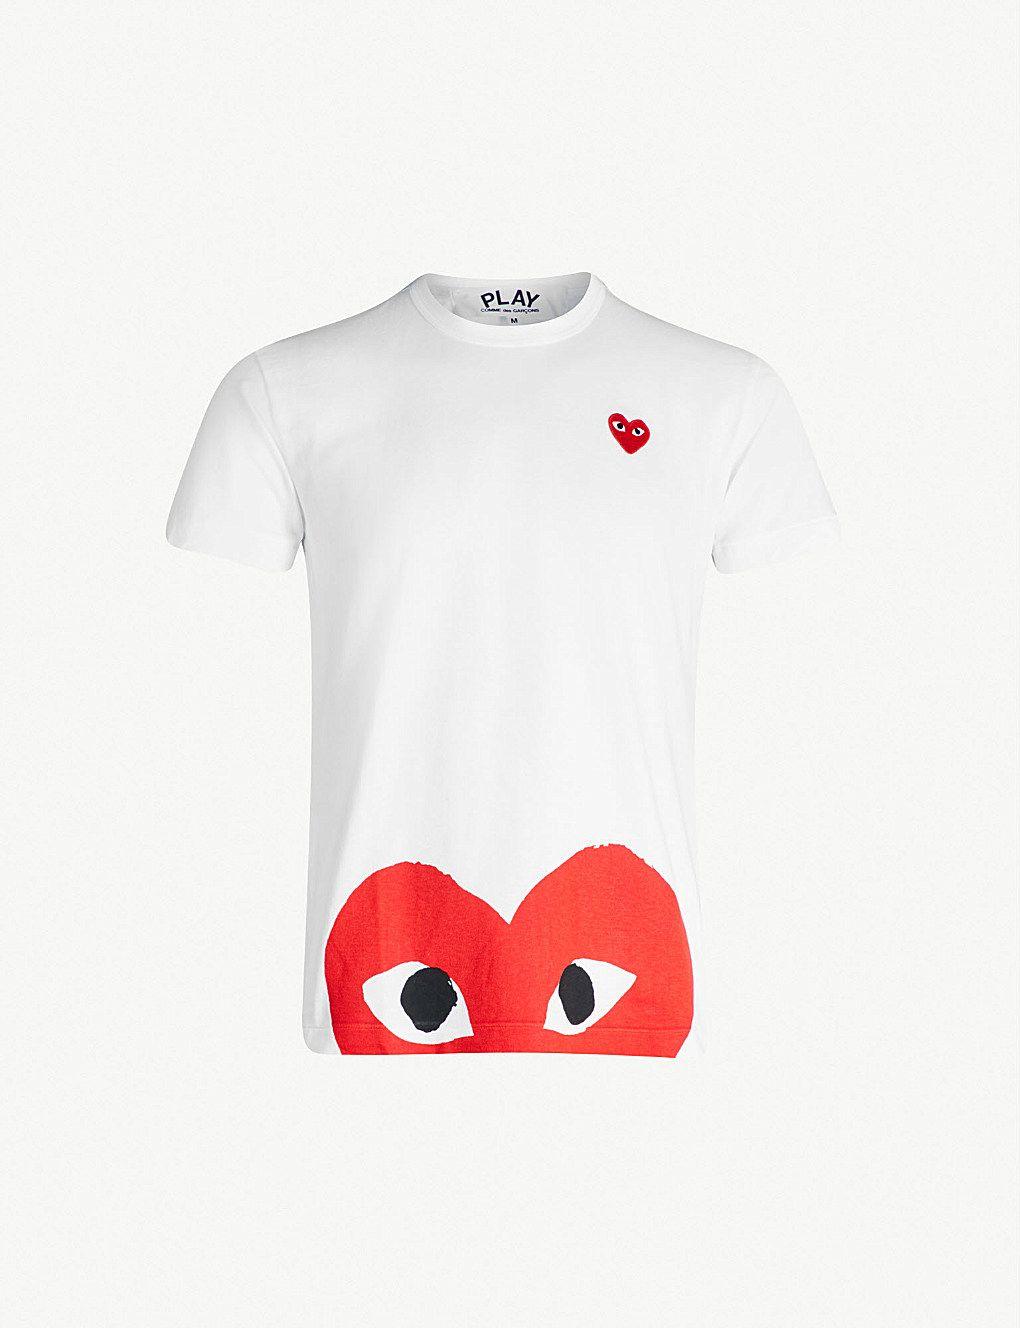 Comme Des Garcons Heart Logo - COMME DES GARCONS PLAY - Half-heart logo t-shirt | Selfridges.com